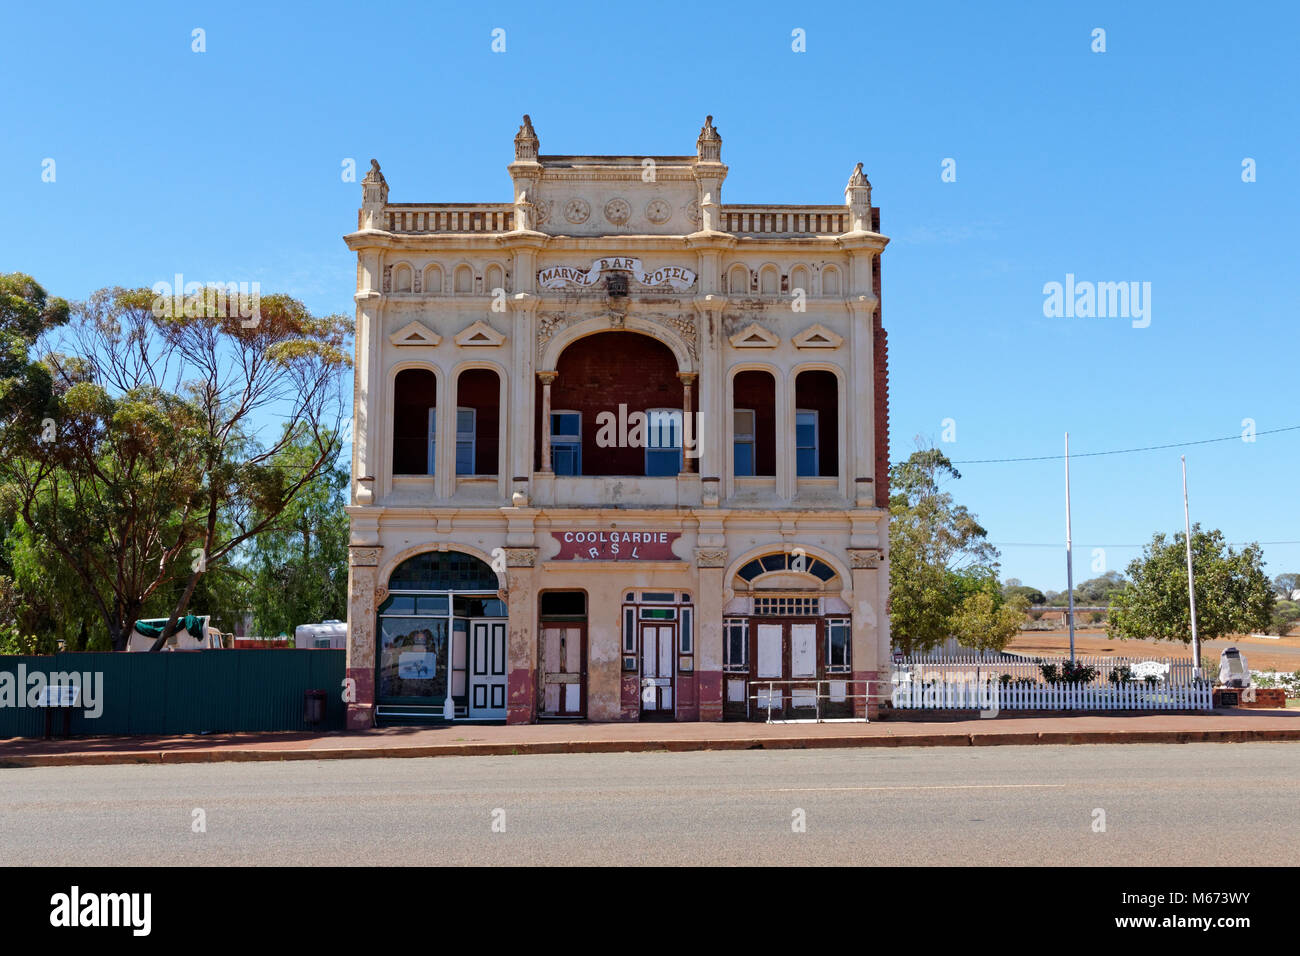 Old Marvel Bar Hotel, now occupied by Coolgardie RSL, Coolgardie, Western Australia. Stock Photo